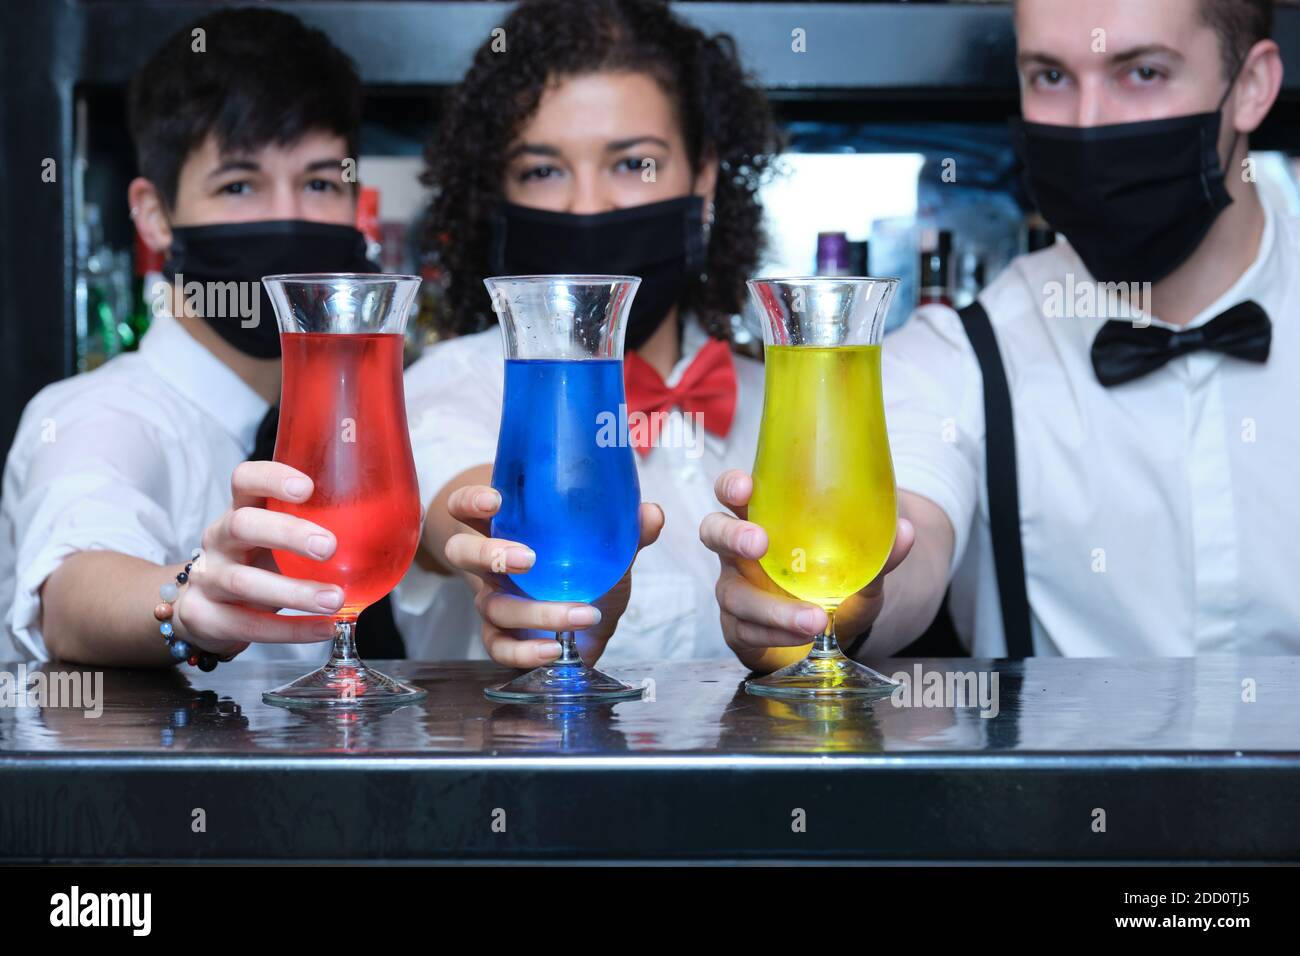 Drei Kellner mit Schutzmaske und drei bunten Cocktails in einer Kneipe. Neue Normalität in Pubs. Stockfoto